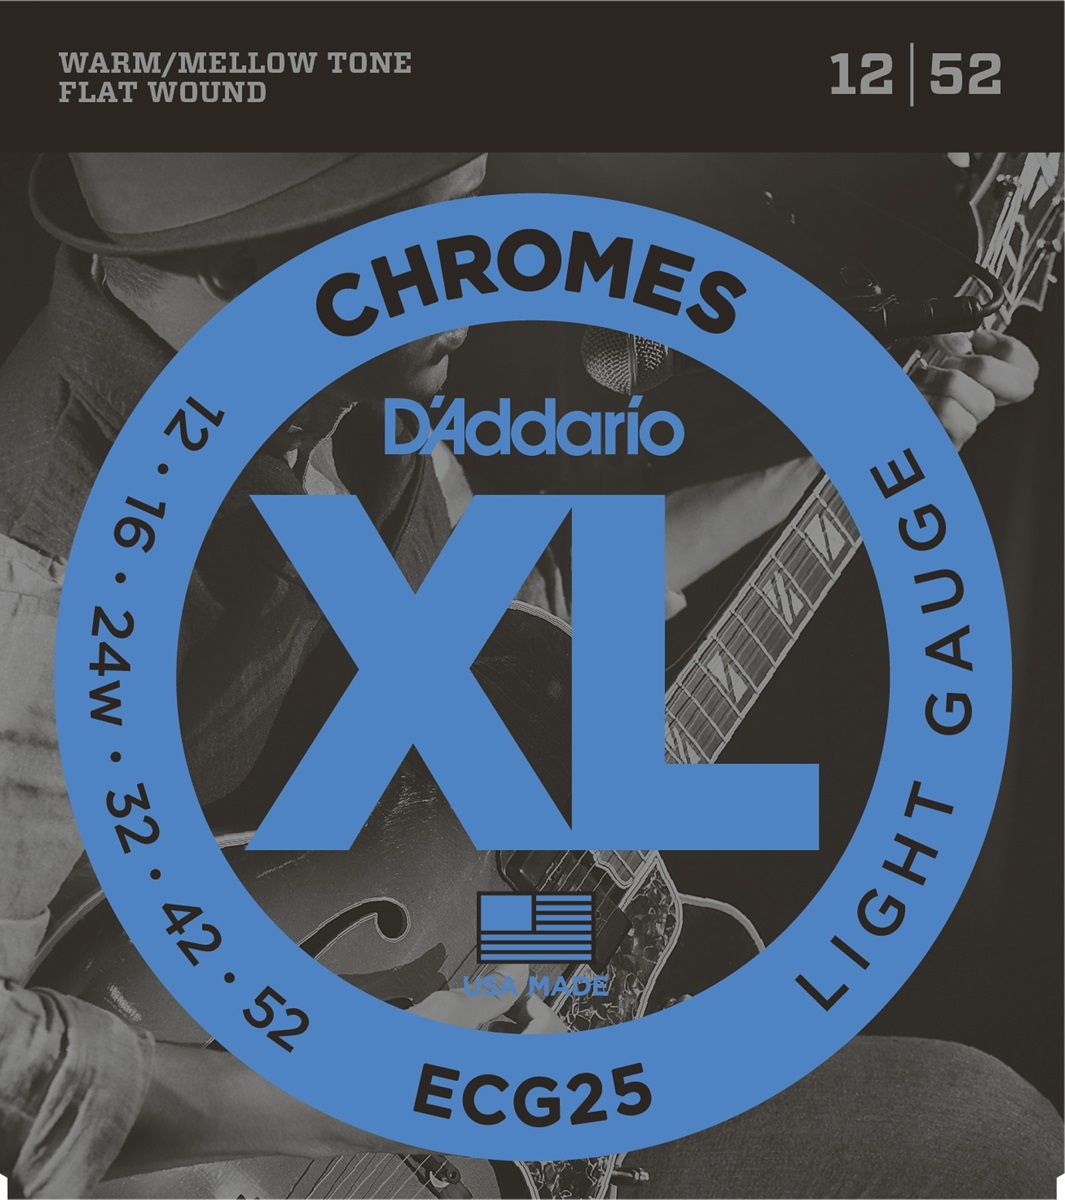 D'addario Jeu De 6 Cordes Guit. Elec. 6c Chromes Jazz 012.052 Ecg25 - E-Gitarren Saiten - Main picture